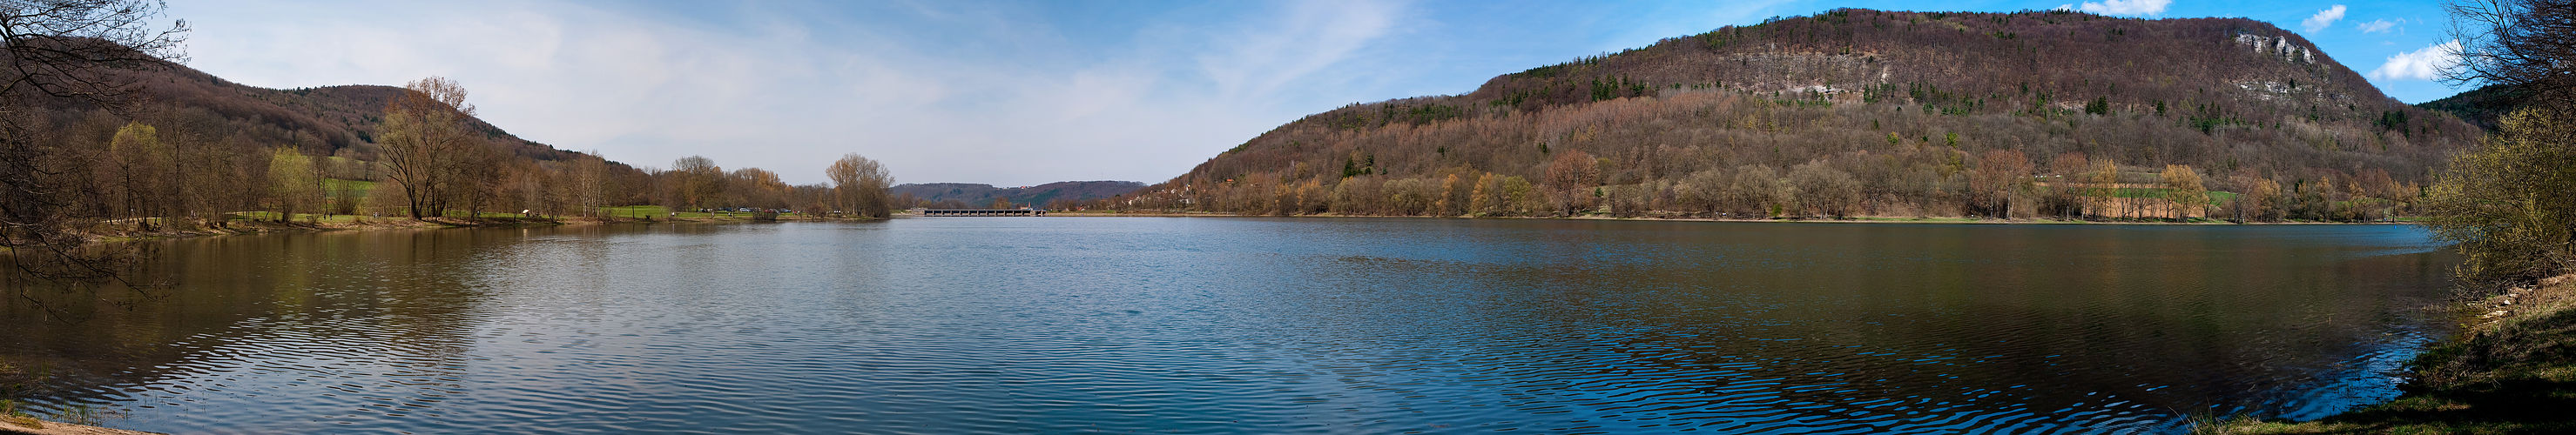 Happurger Stausee Panorama (2)